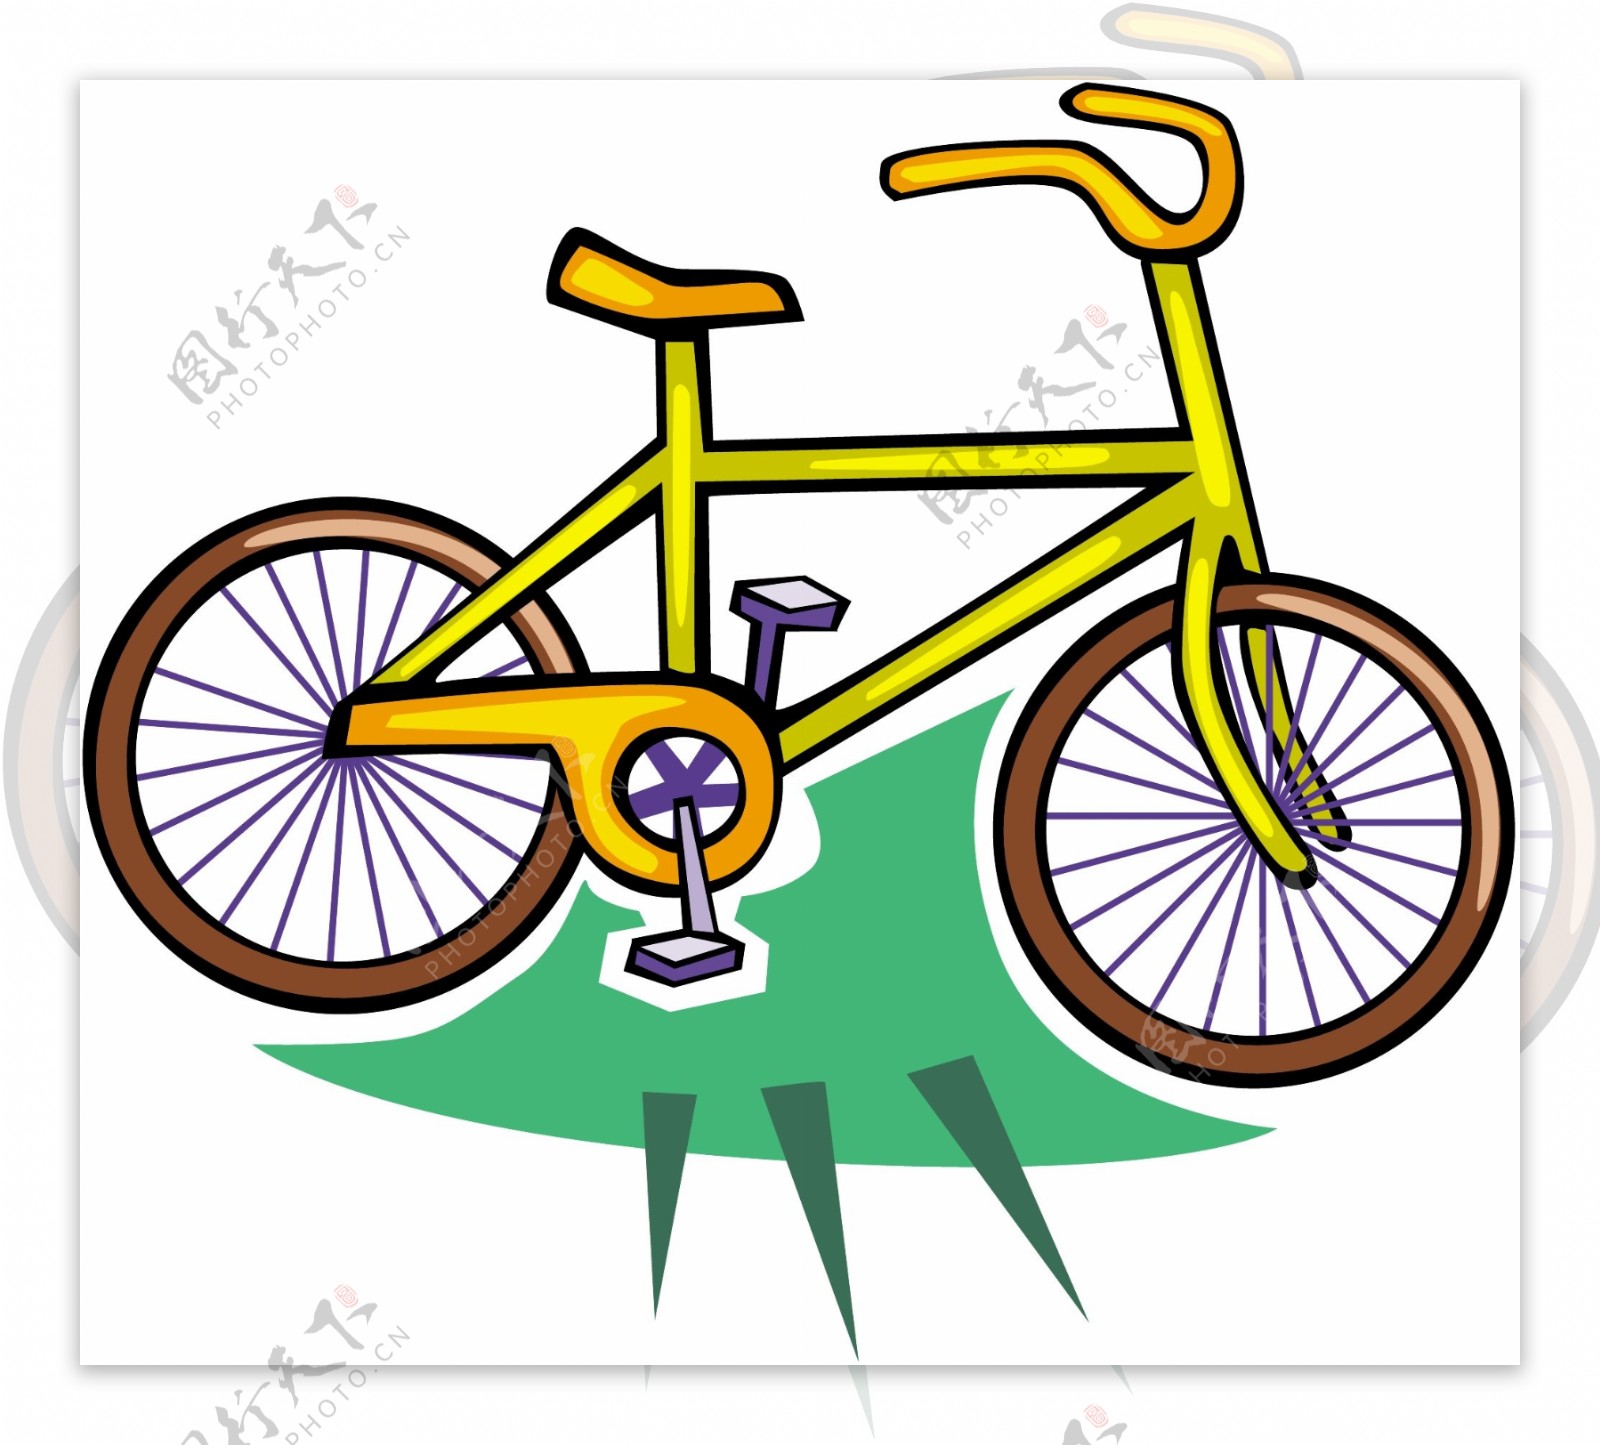 自行车交通工具矢量素材EPS格式0042